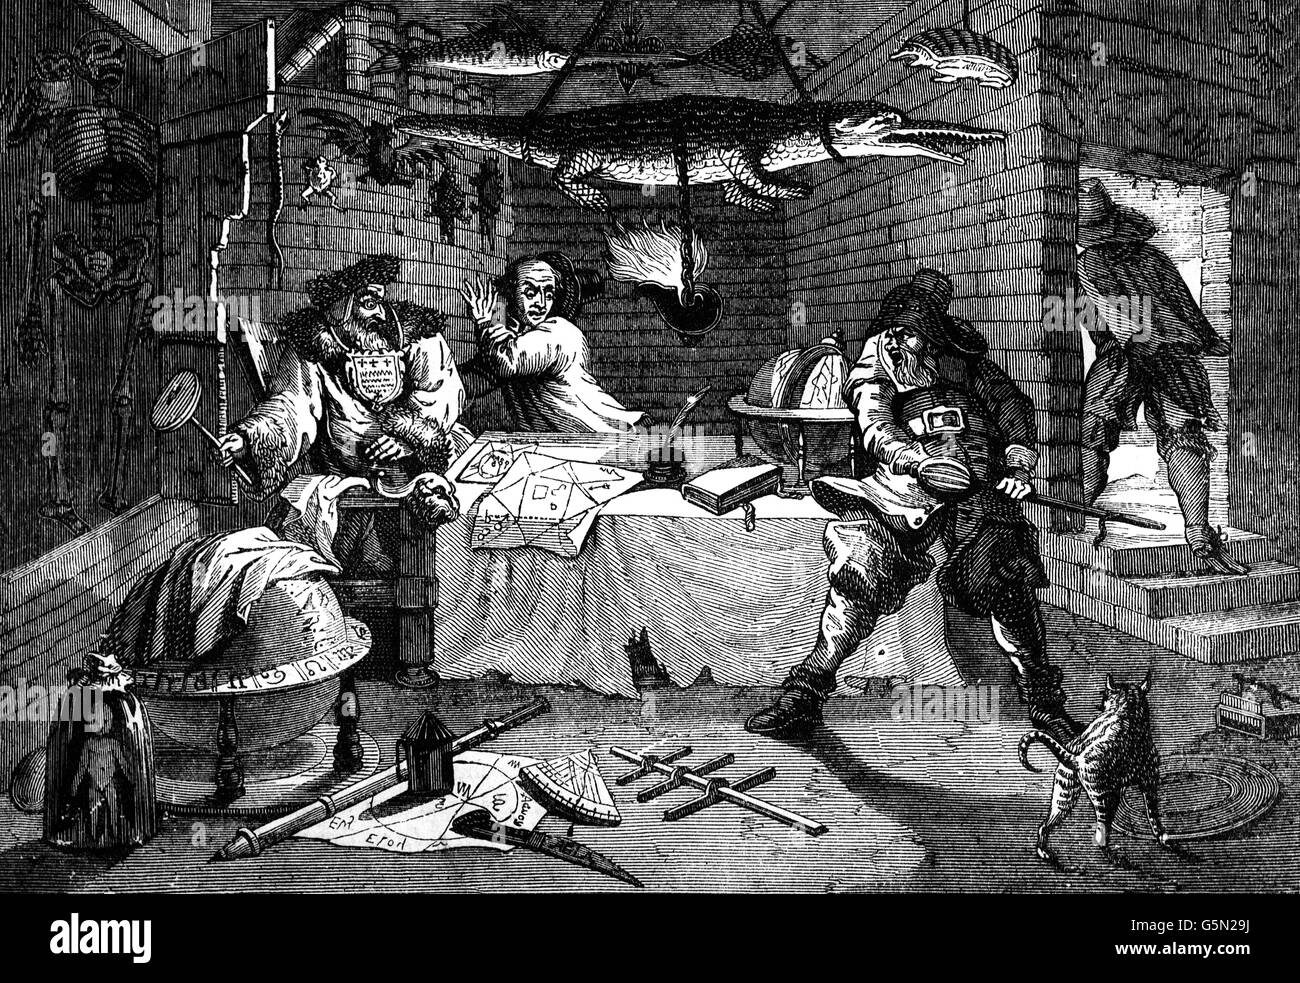 Une scène d'Hudibras, une polémique satirique sur Roundheads, puritains, les Presbytériens et bien d'autres factions impliquées dans la guerre civile anglaise. écrit par Samuel Butler (1613 - 1680), poète et auteur satirique. Banque D'Images